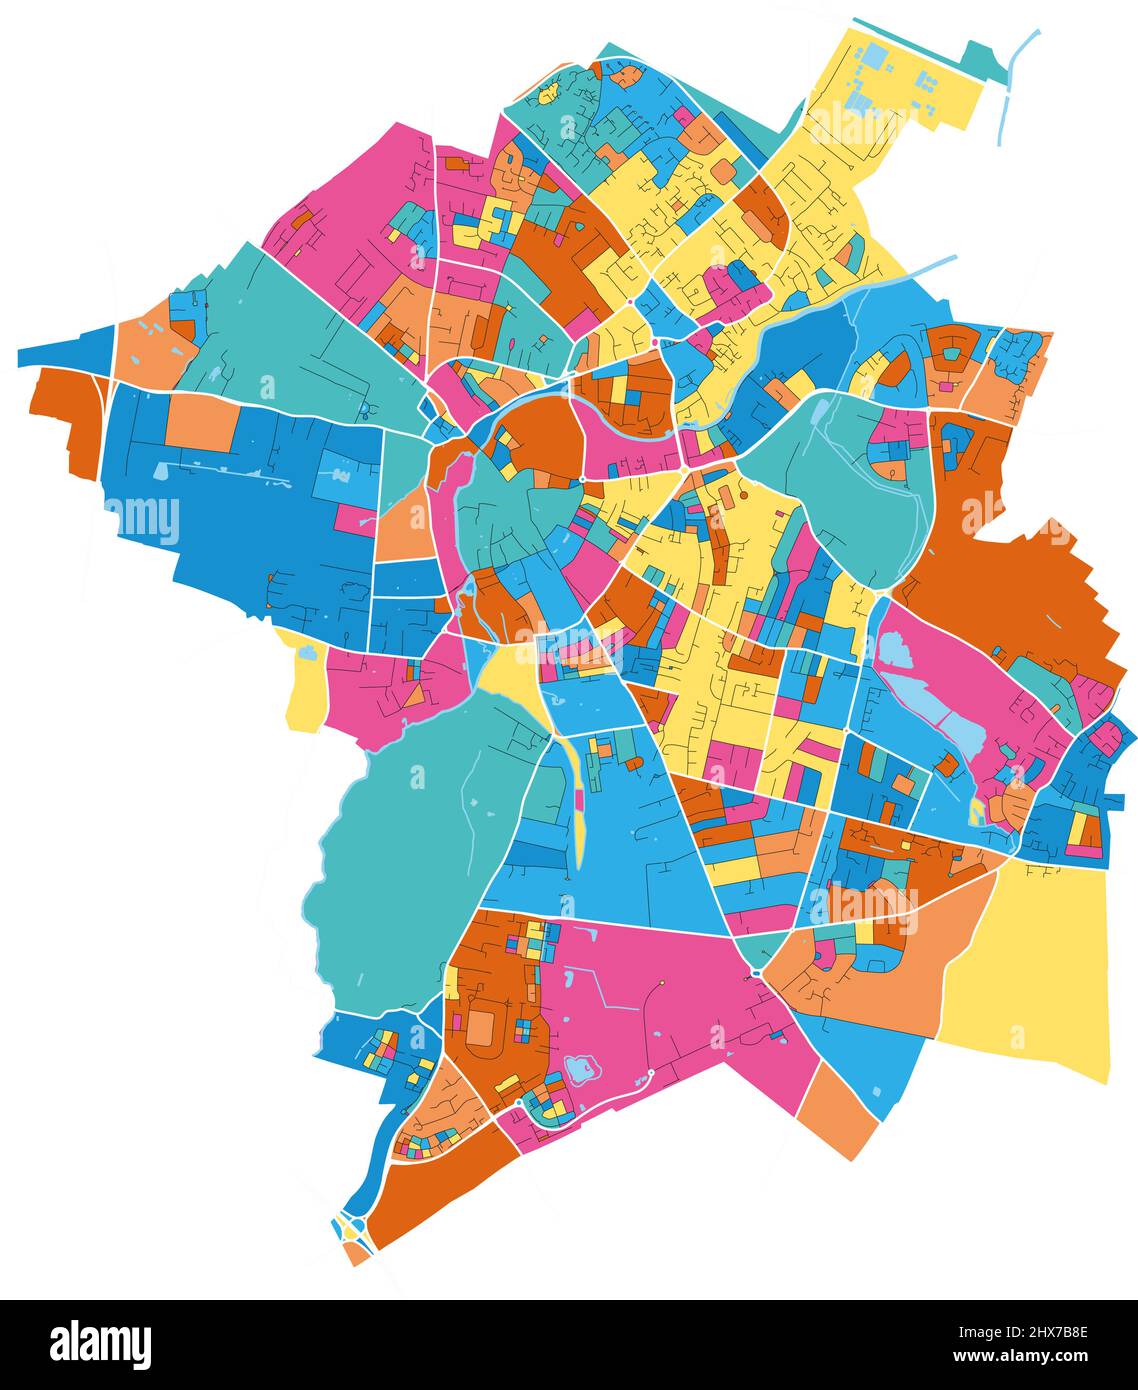 Cambridge, East of England, England Bunte hochauflösende Vektorgrafik-Karte mit Stadtgrenzen. Weiße Umrisse für Hauptstraßen. Viele Details. Blaues sh Stock Vektor